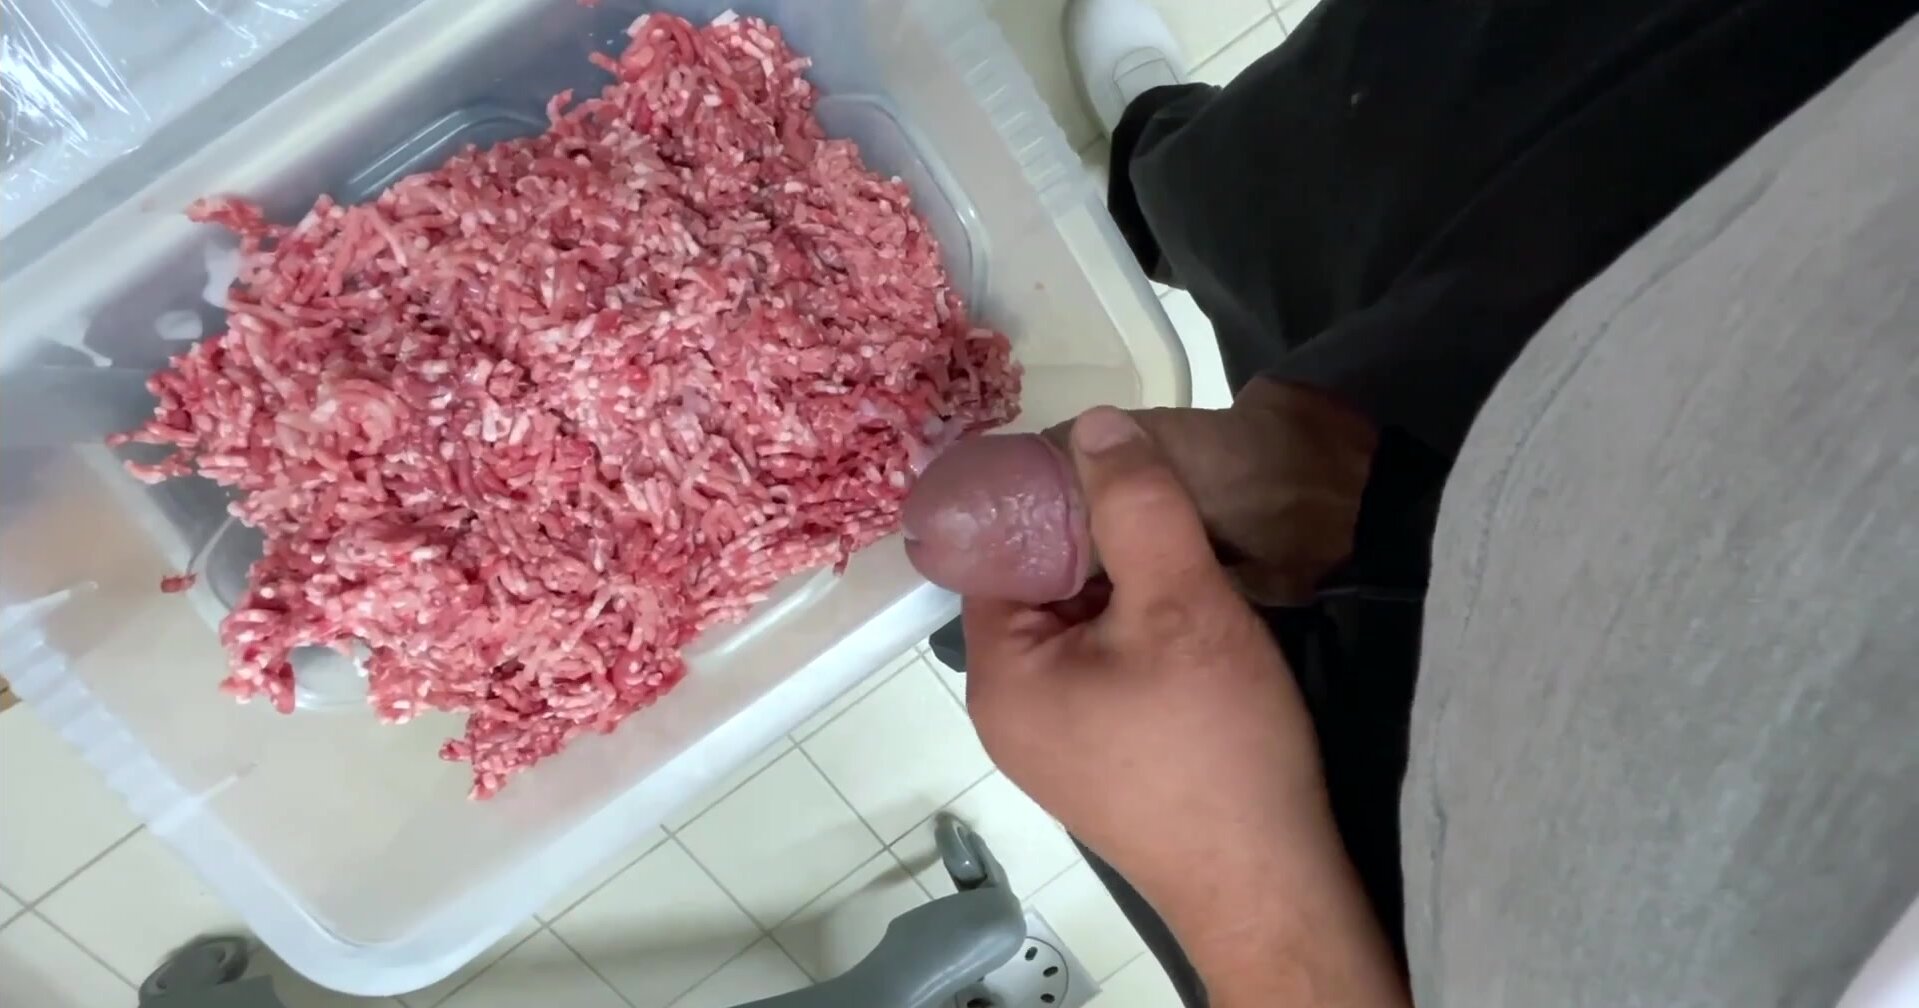 Beef Hq Porn - Butcher Cum in Meat - ThisVid.com